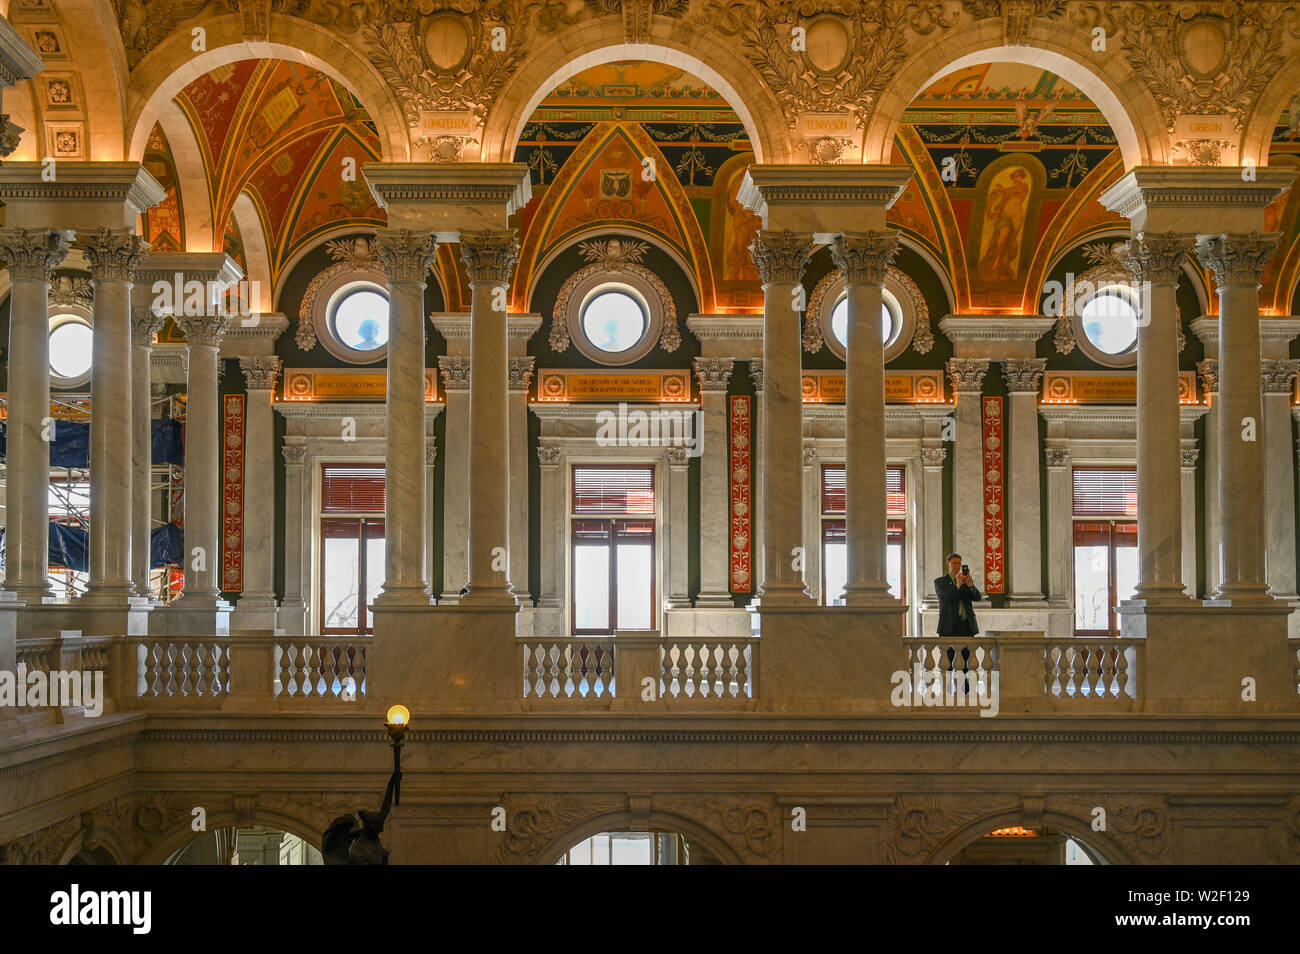 Bibliothèque du Congrès au Capitole. La bibliothèque abrite 167 millions d'articles dont plus de 30 millions de livres. Banque D'Images